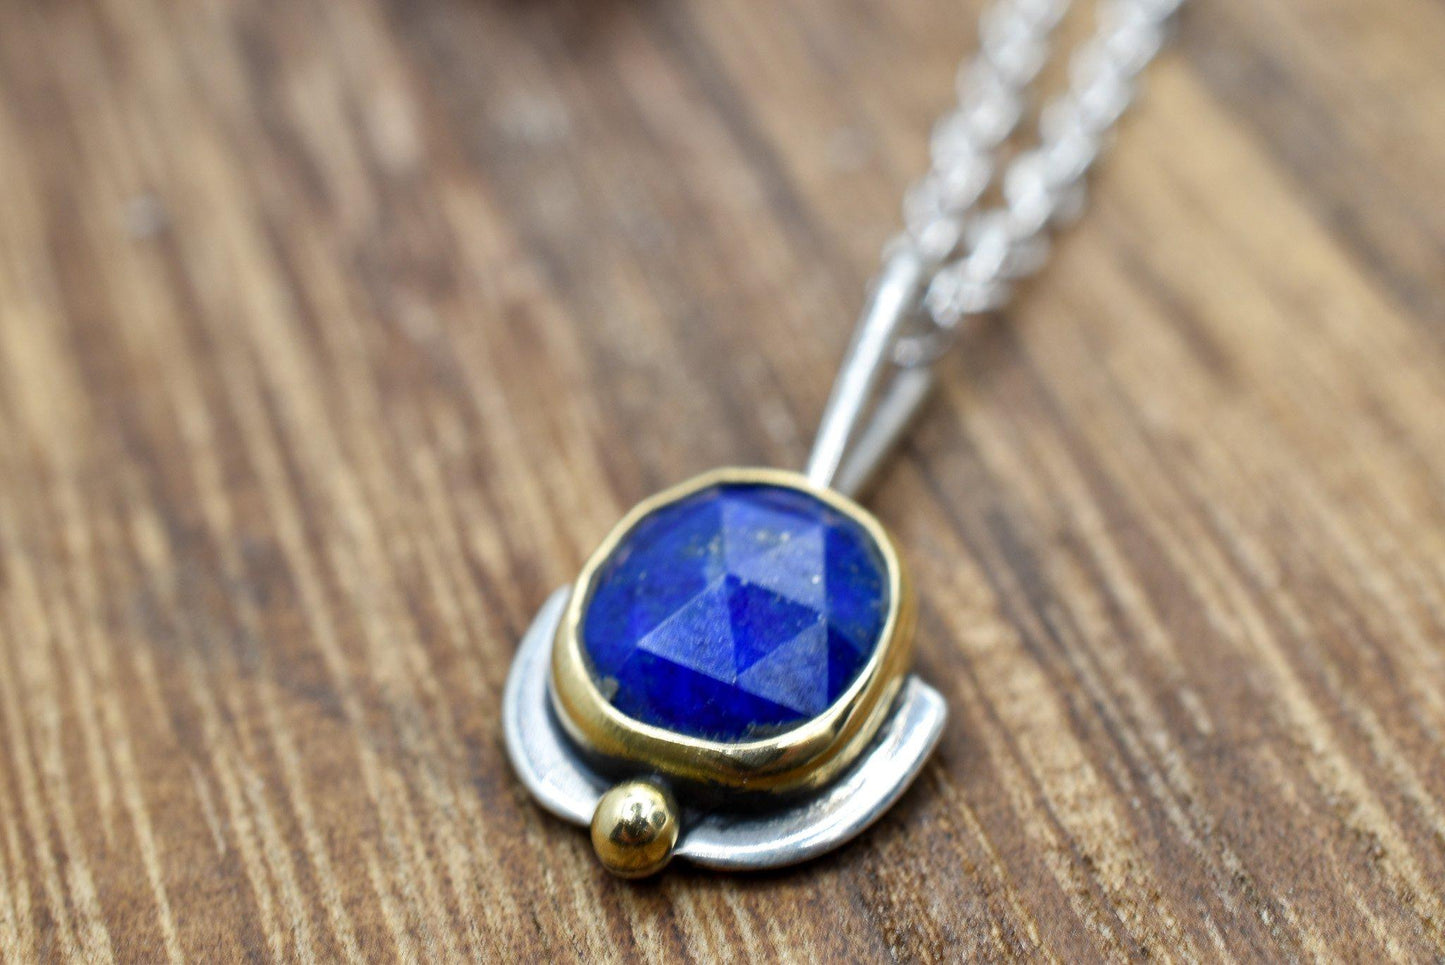 18k Gold, Rose Cut Lapis Lazuli, Mixed Metals Necklace